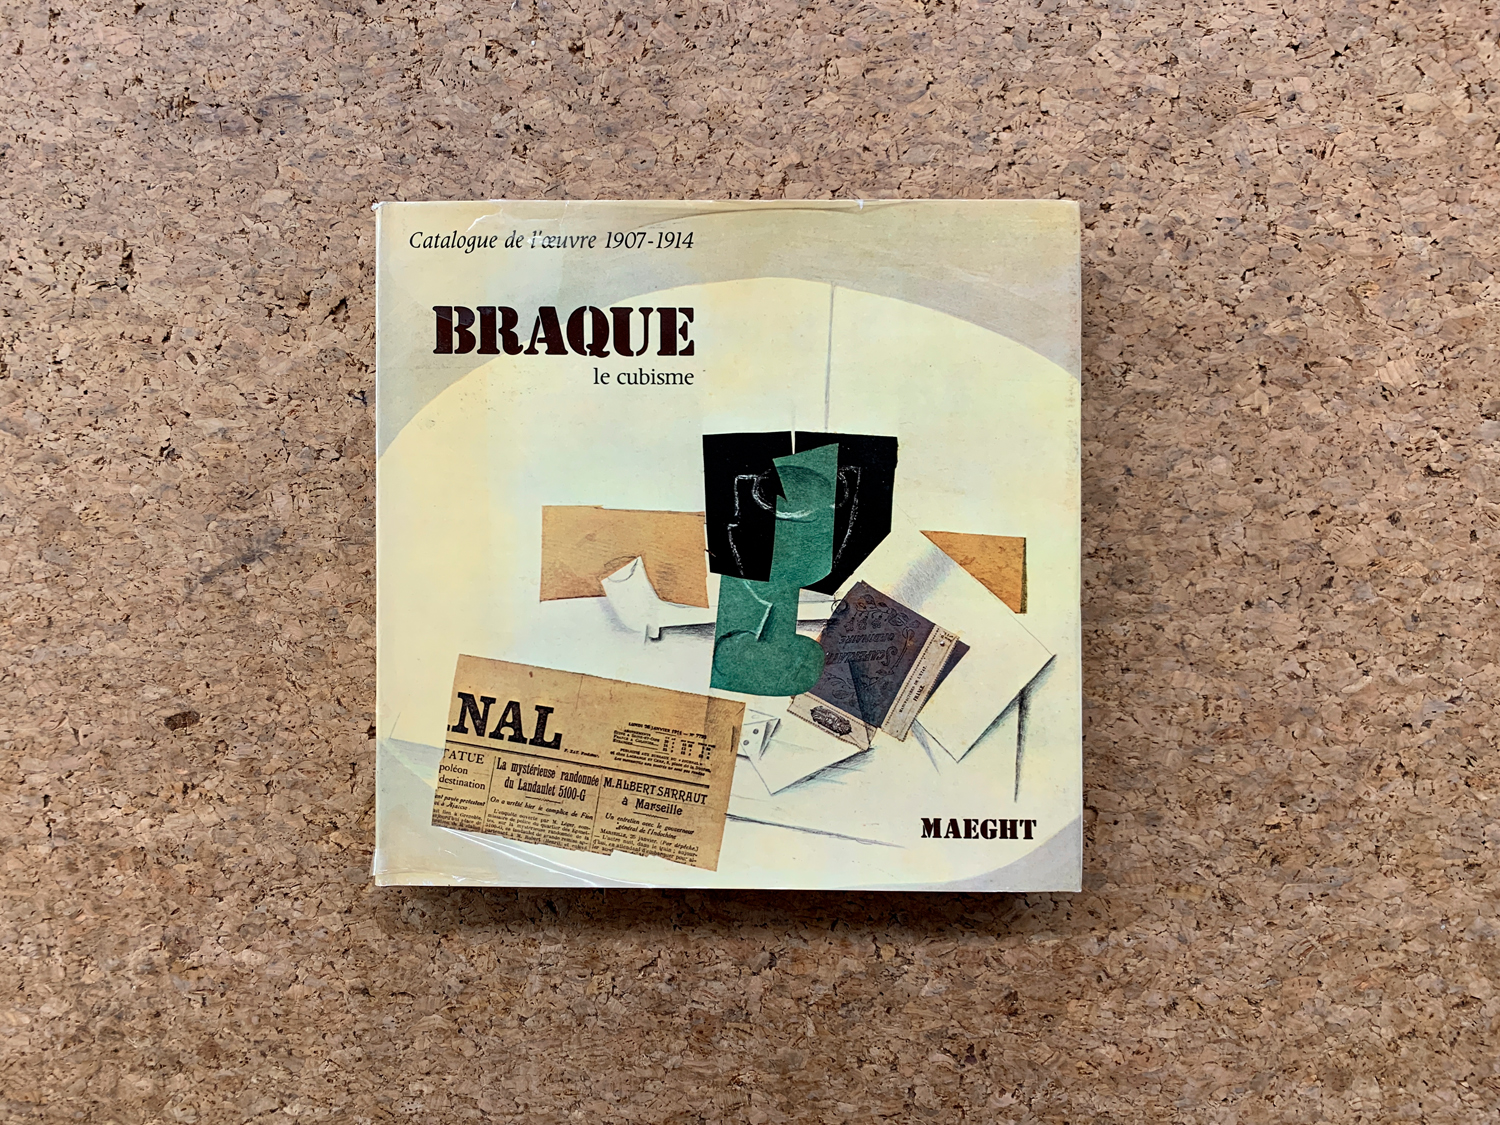 GEORGES BRAQUE - Braque. Le cubisme. Catalogue de l'oeuvre 1907-1914, 1982